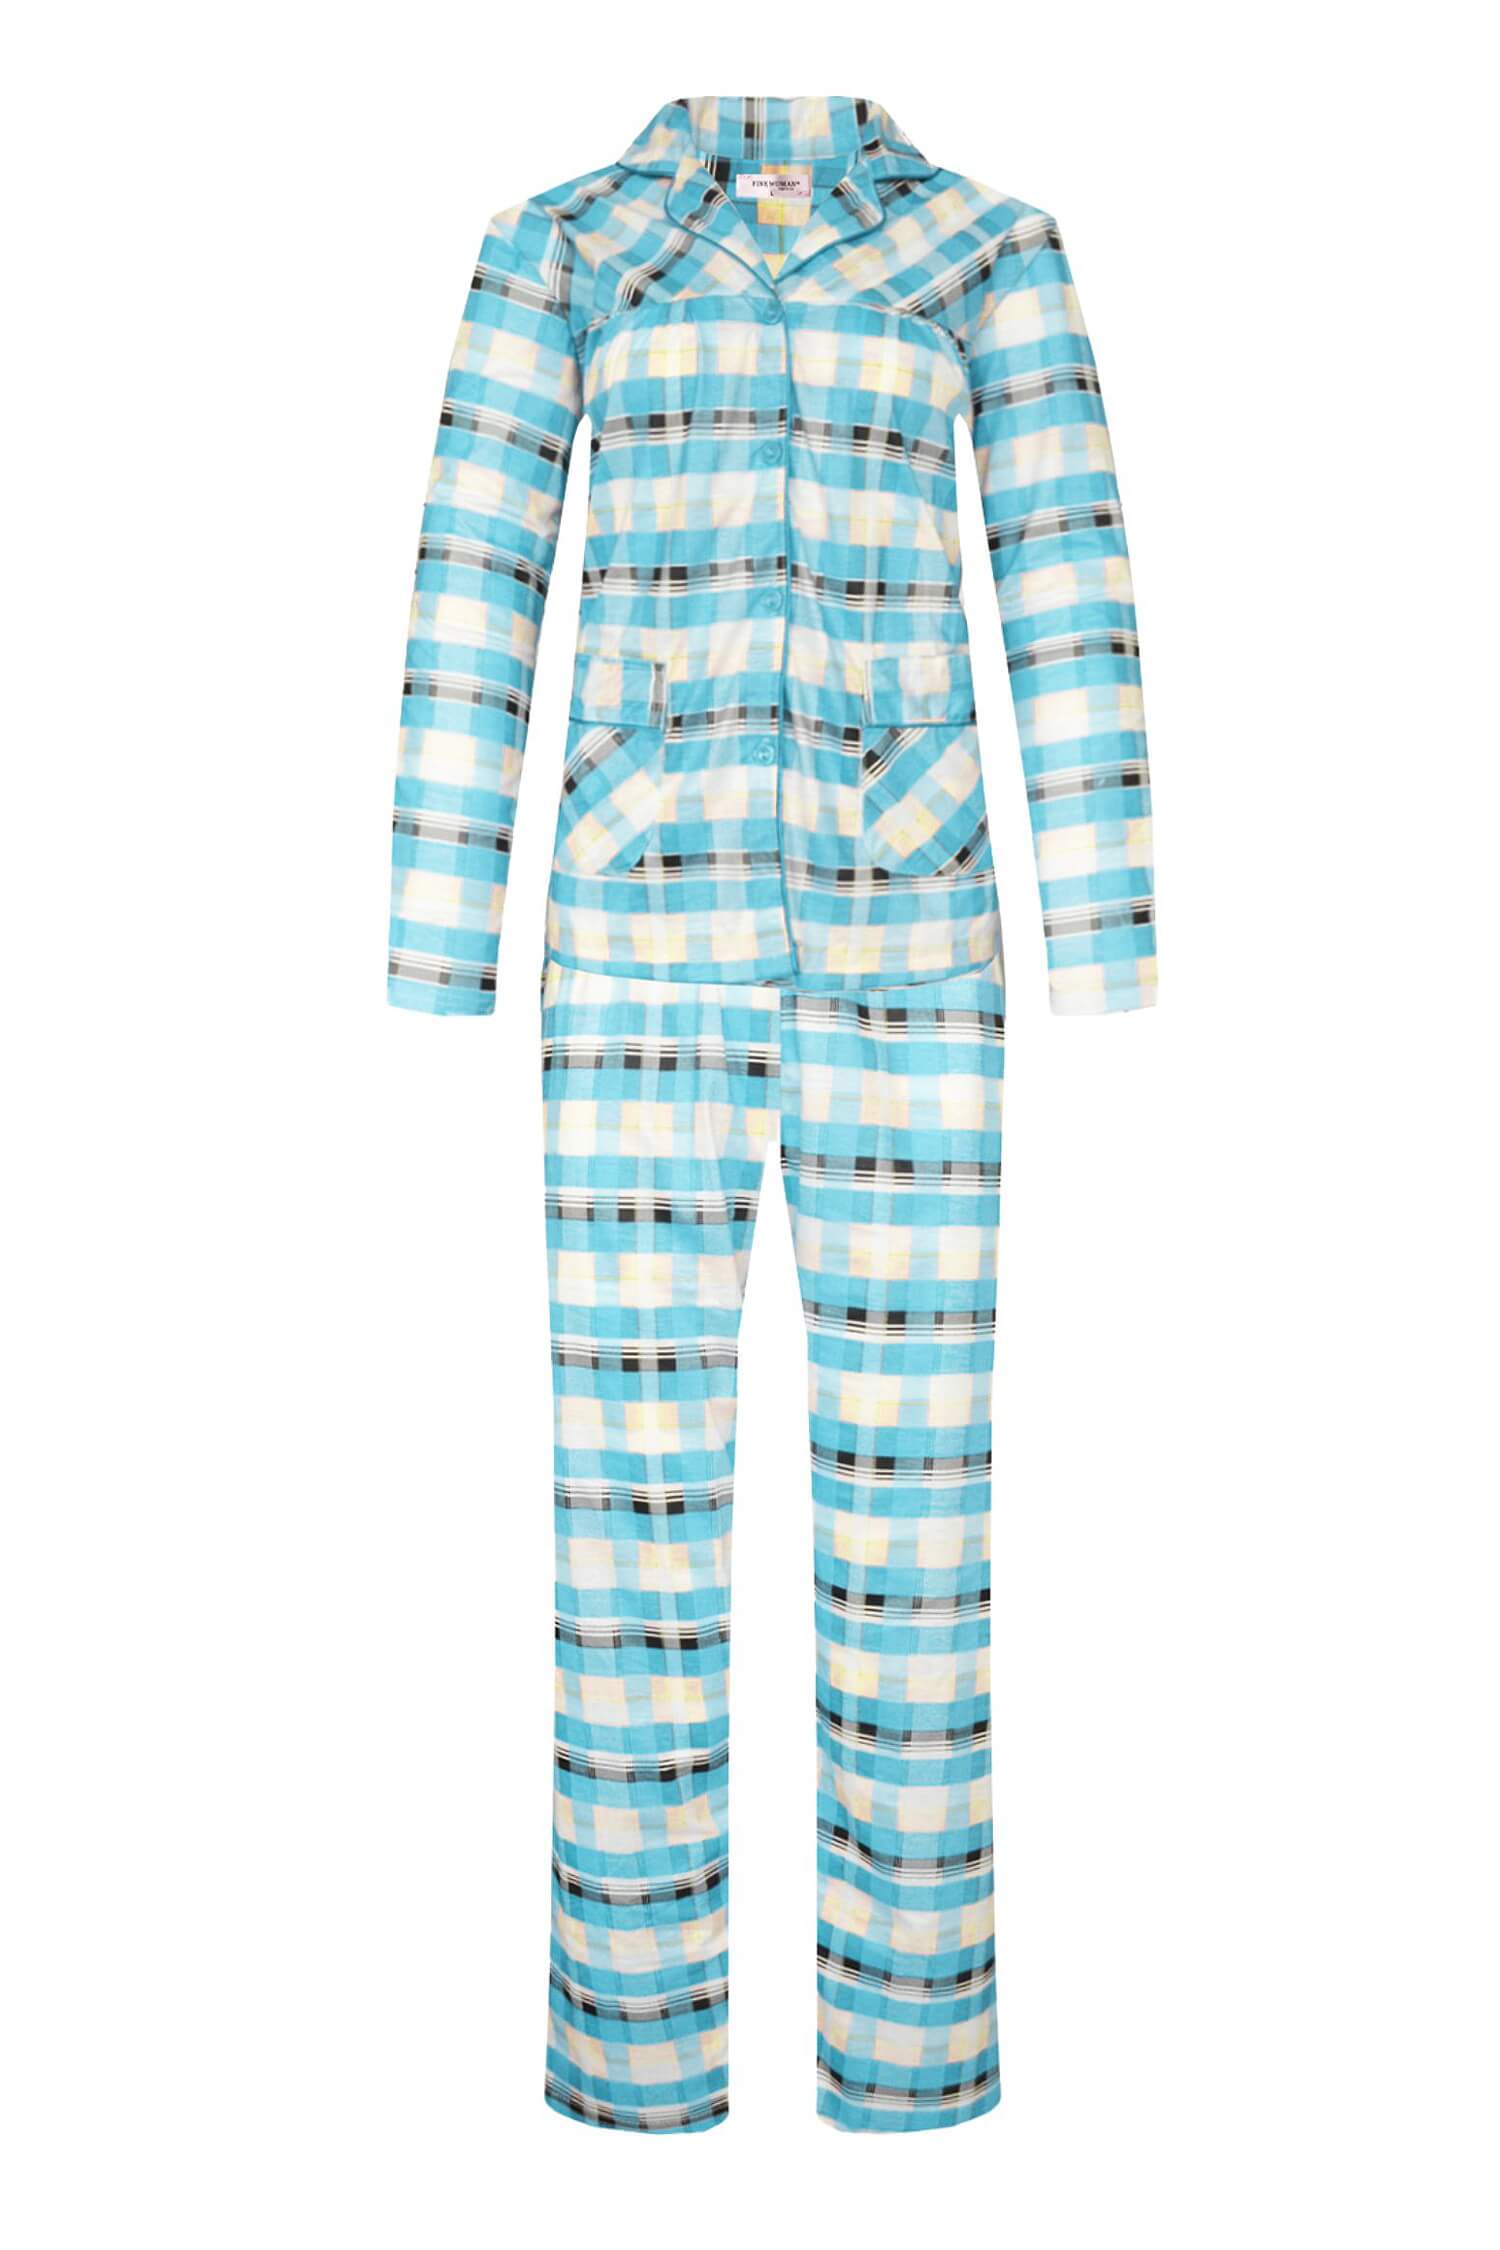 Odeta dámské kostkované pyžamo dlouhé 2271 XXL světle modrá